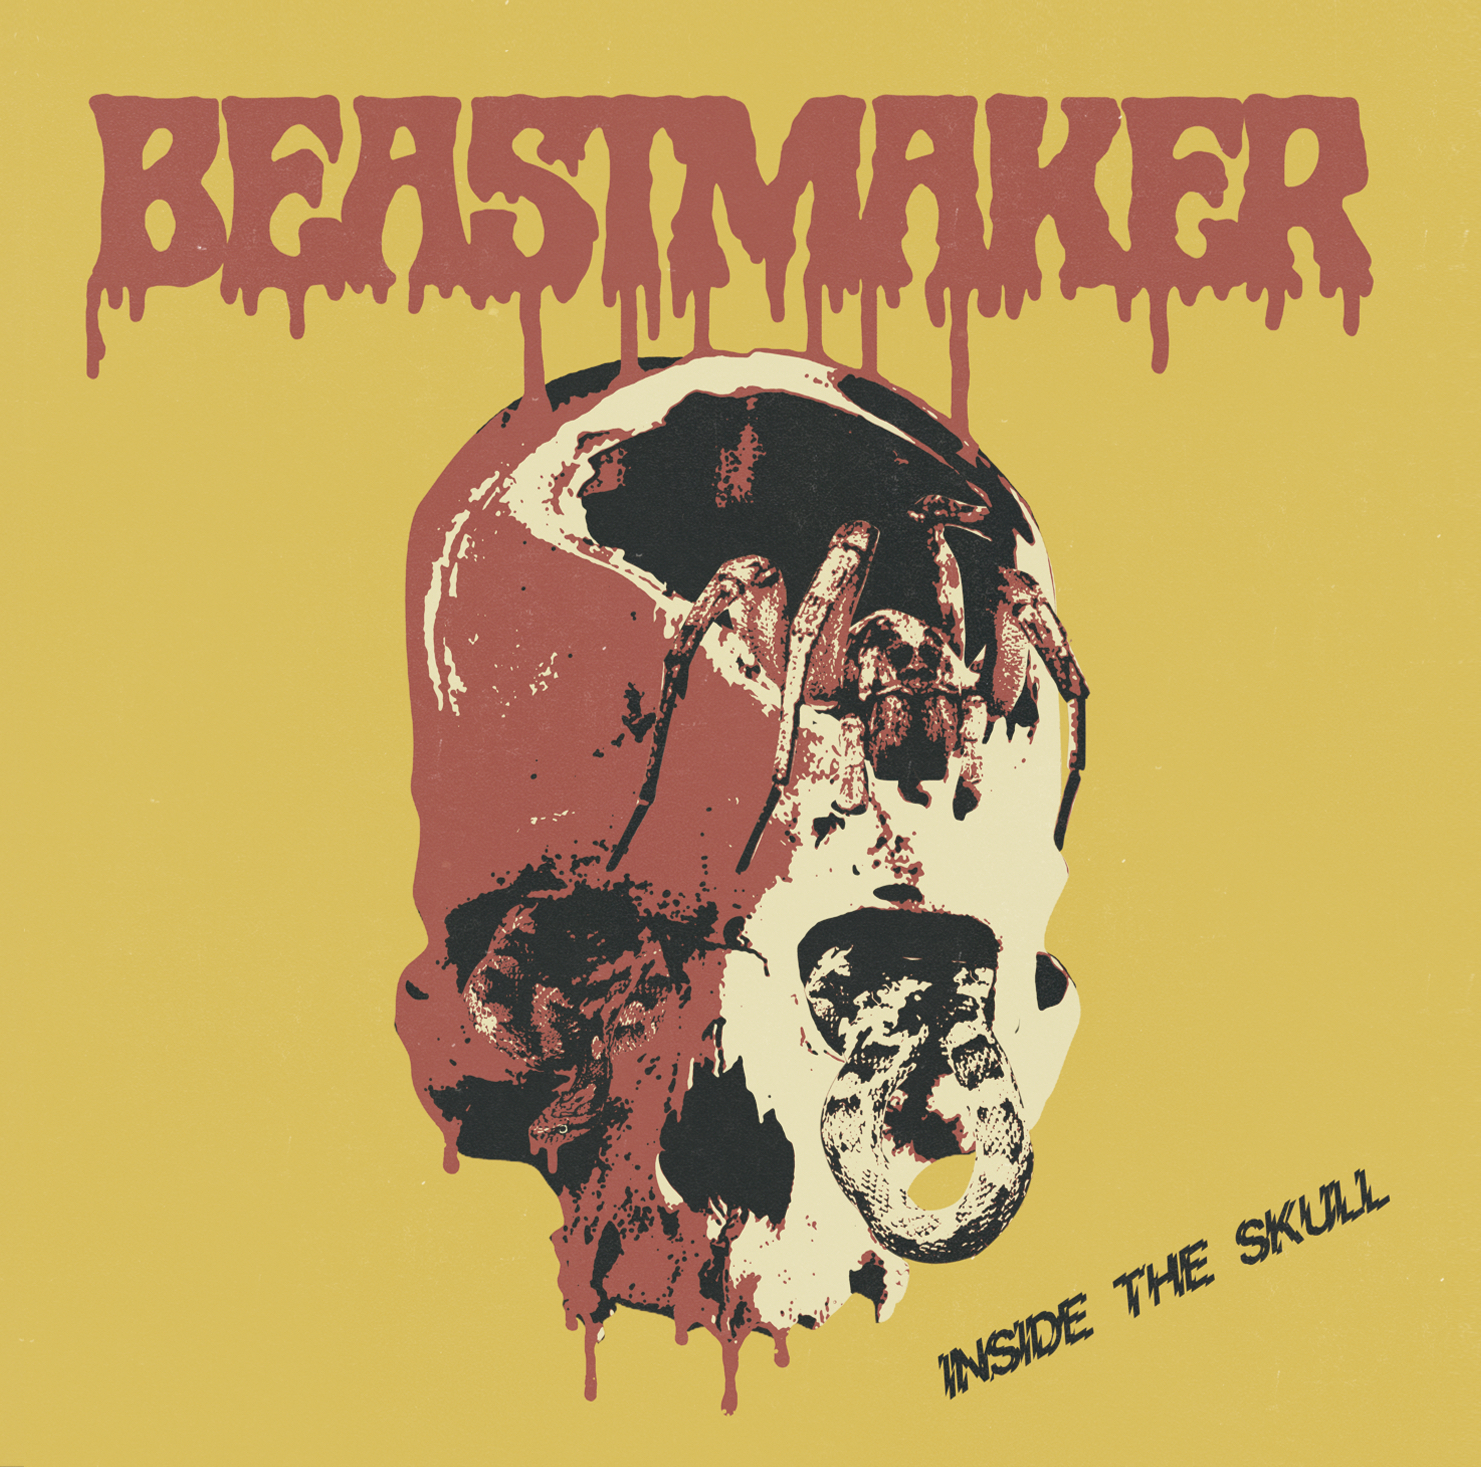 Beastmaker (USA) – Inside The Skull